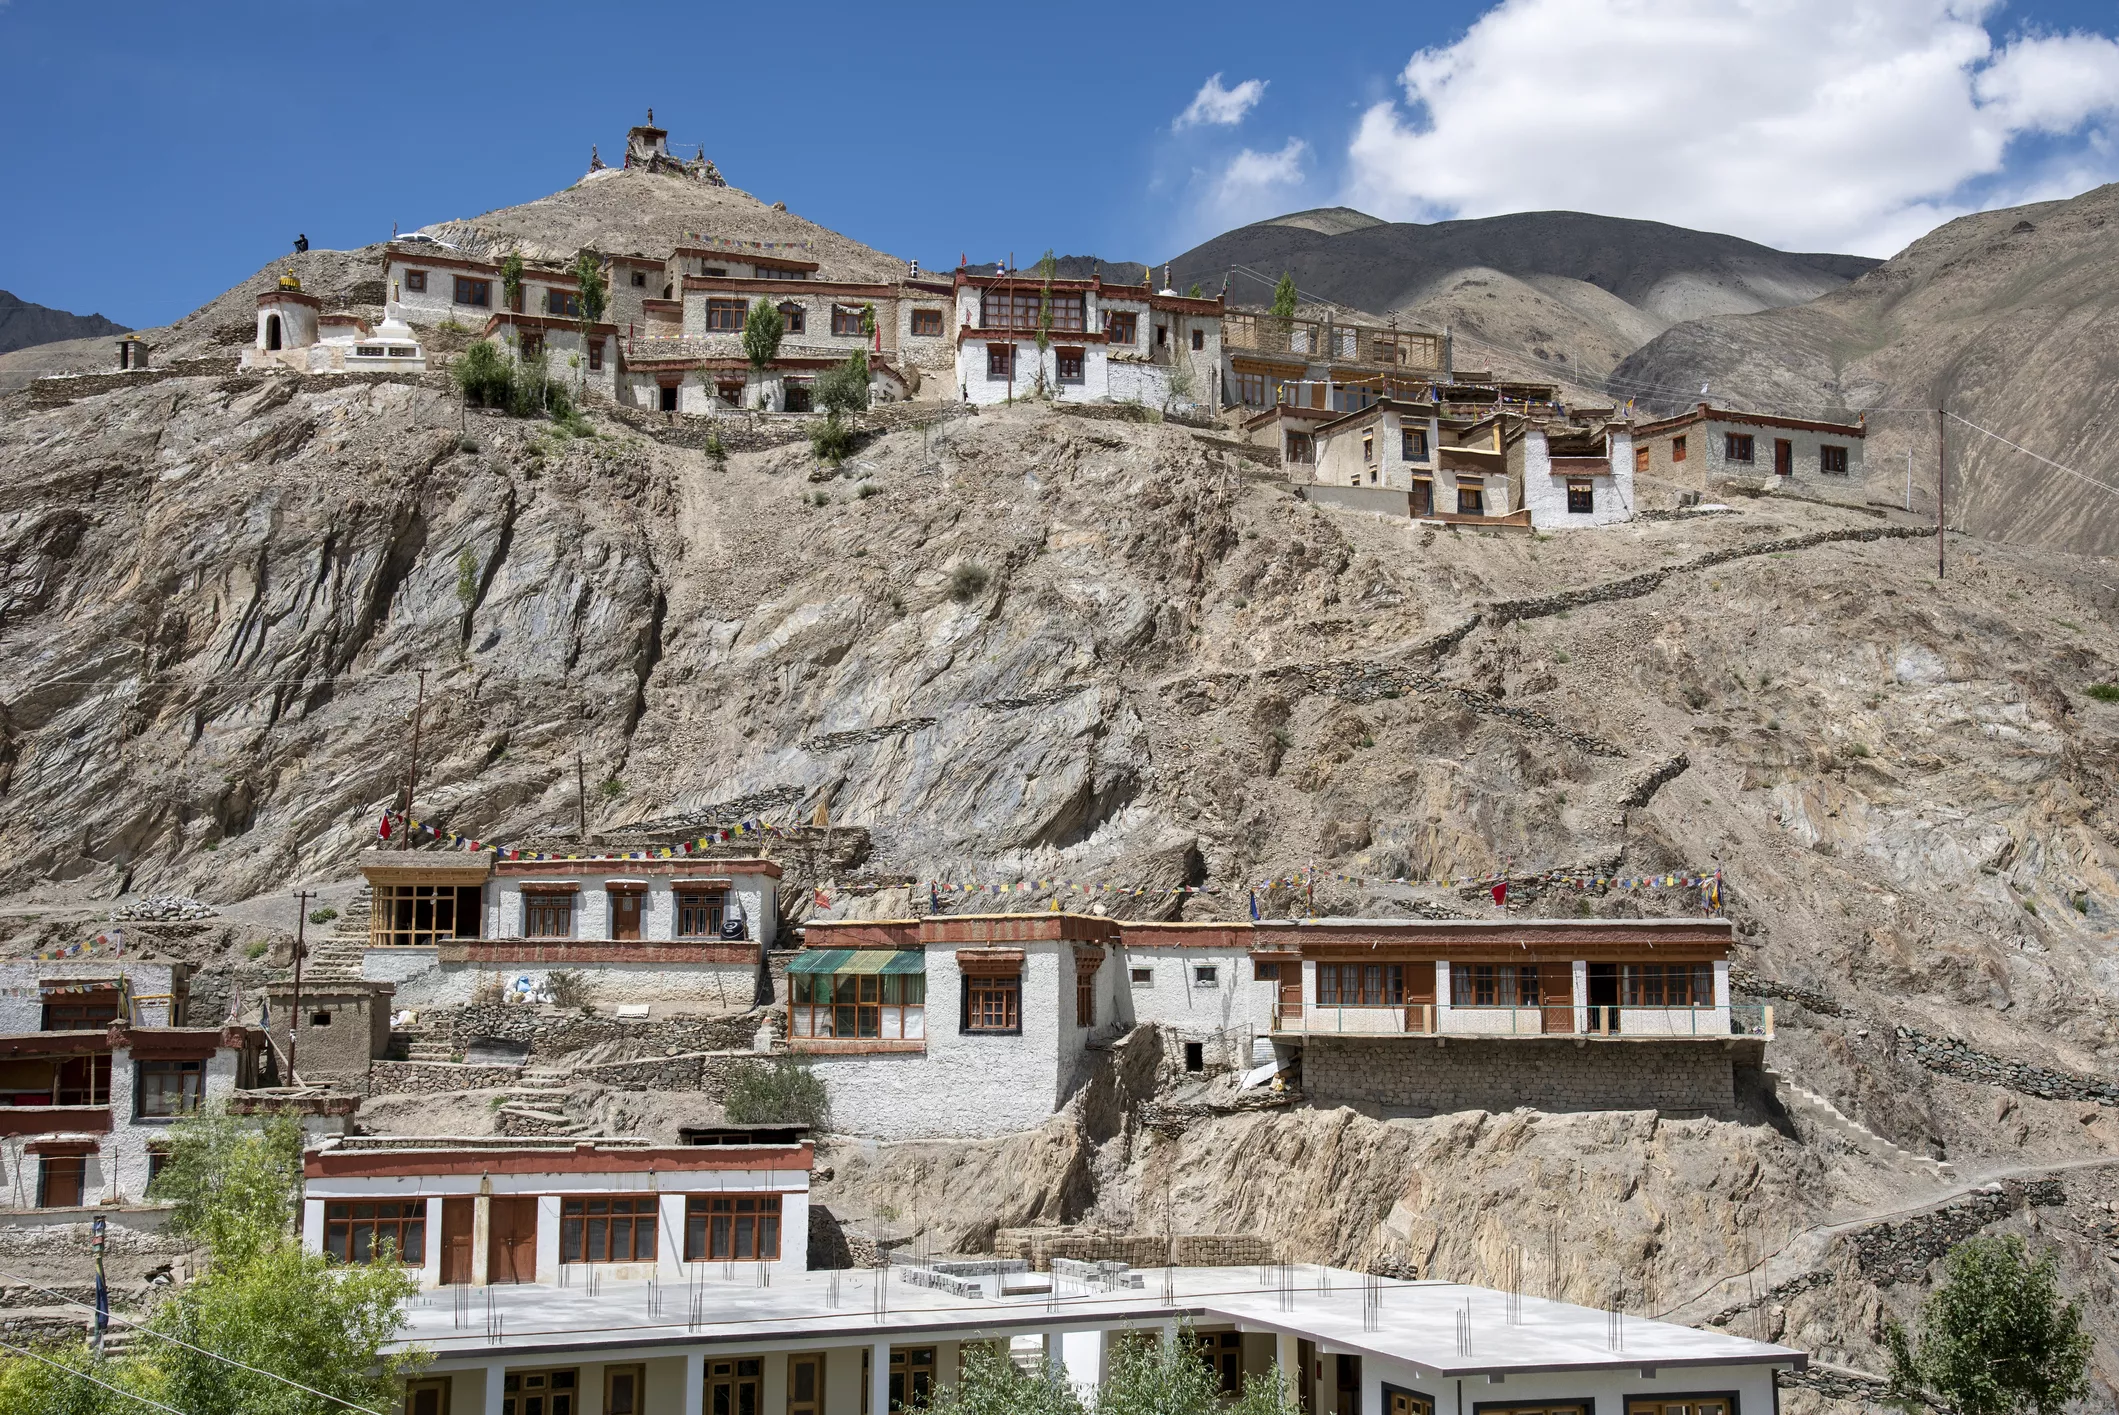 El monestir de Likir Gompa, al Caixmir, és el monument més famós del districte de Likir, Ladakh, a l'Índia